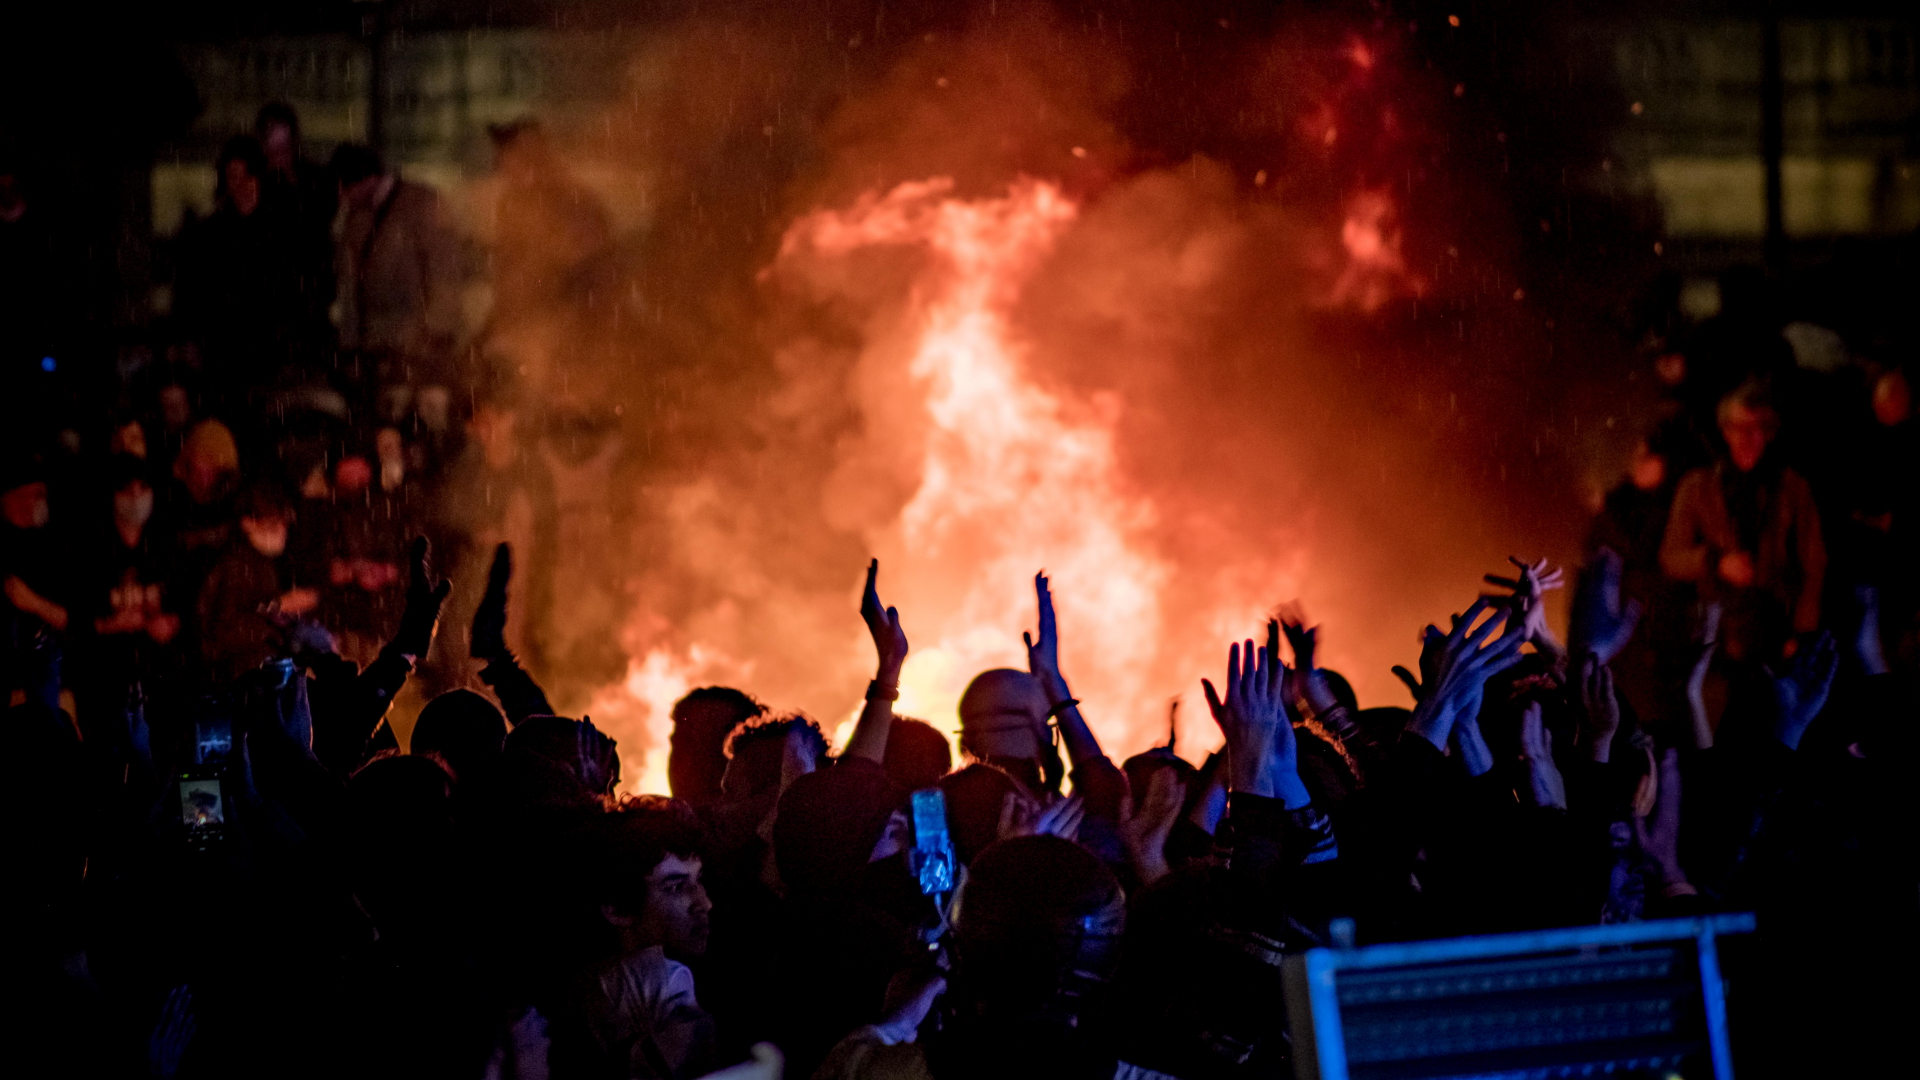 Demonstranten stehen neben einer brennenden Barrikade während einer Demonstration auf dem Place de la Concorde.  | dpa